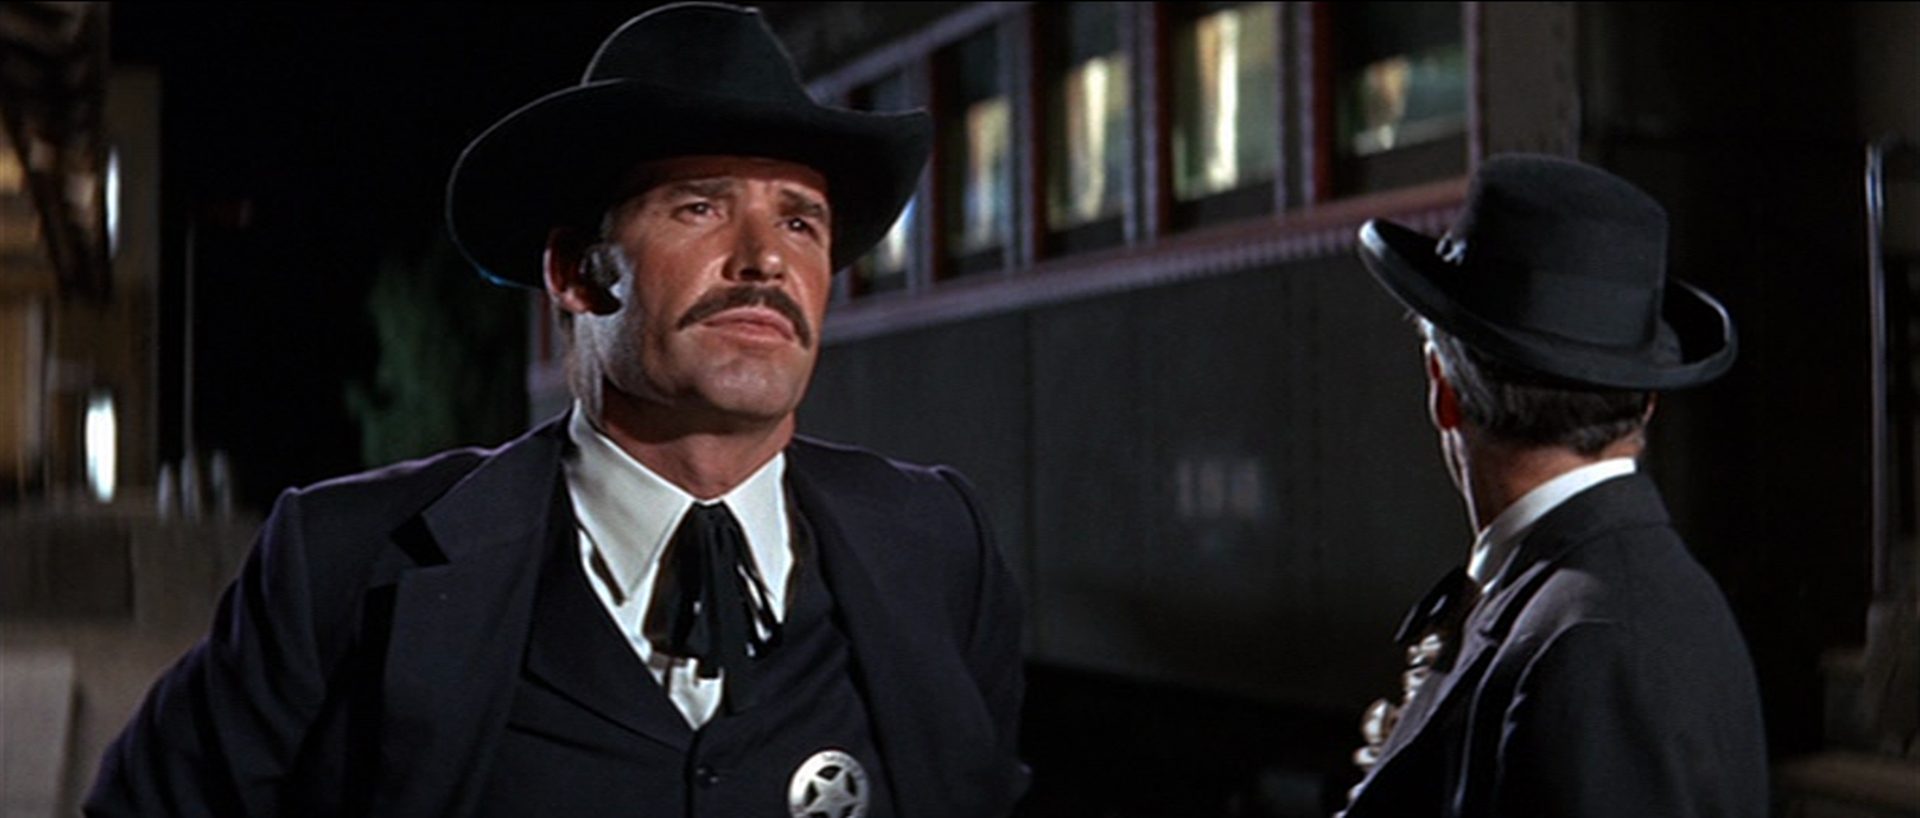 Nahaufnahme von Wyatt Earp mit Schnauzbart und festem Blick vor einem Eisenbahnwaggon, neben ihm Doc Holliday.